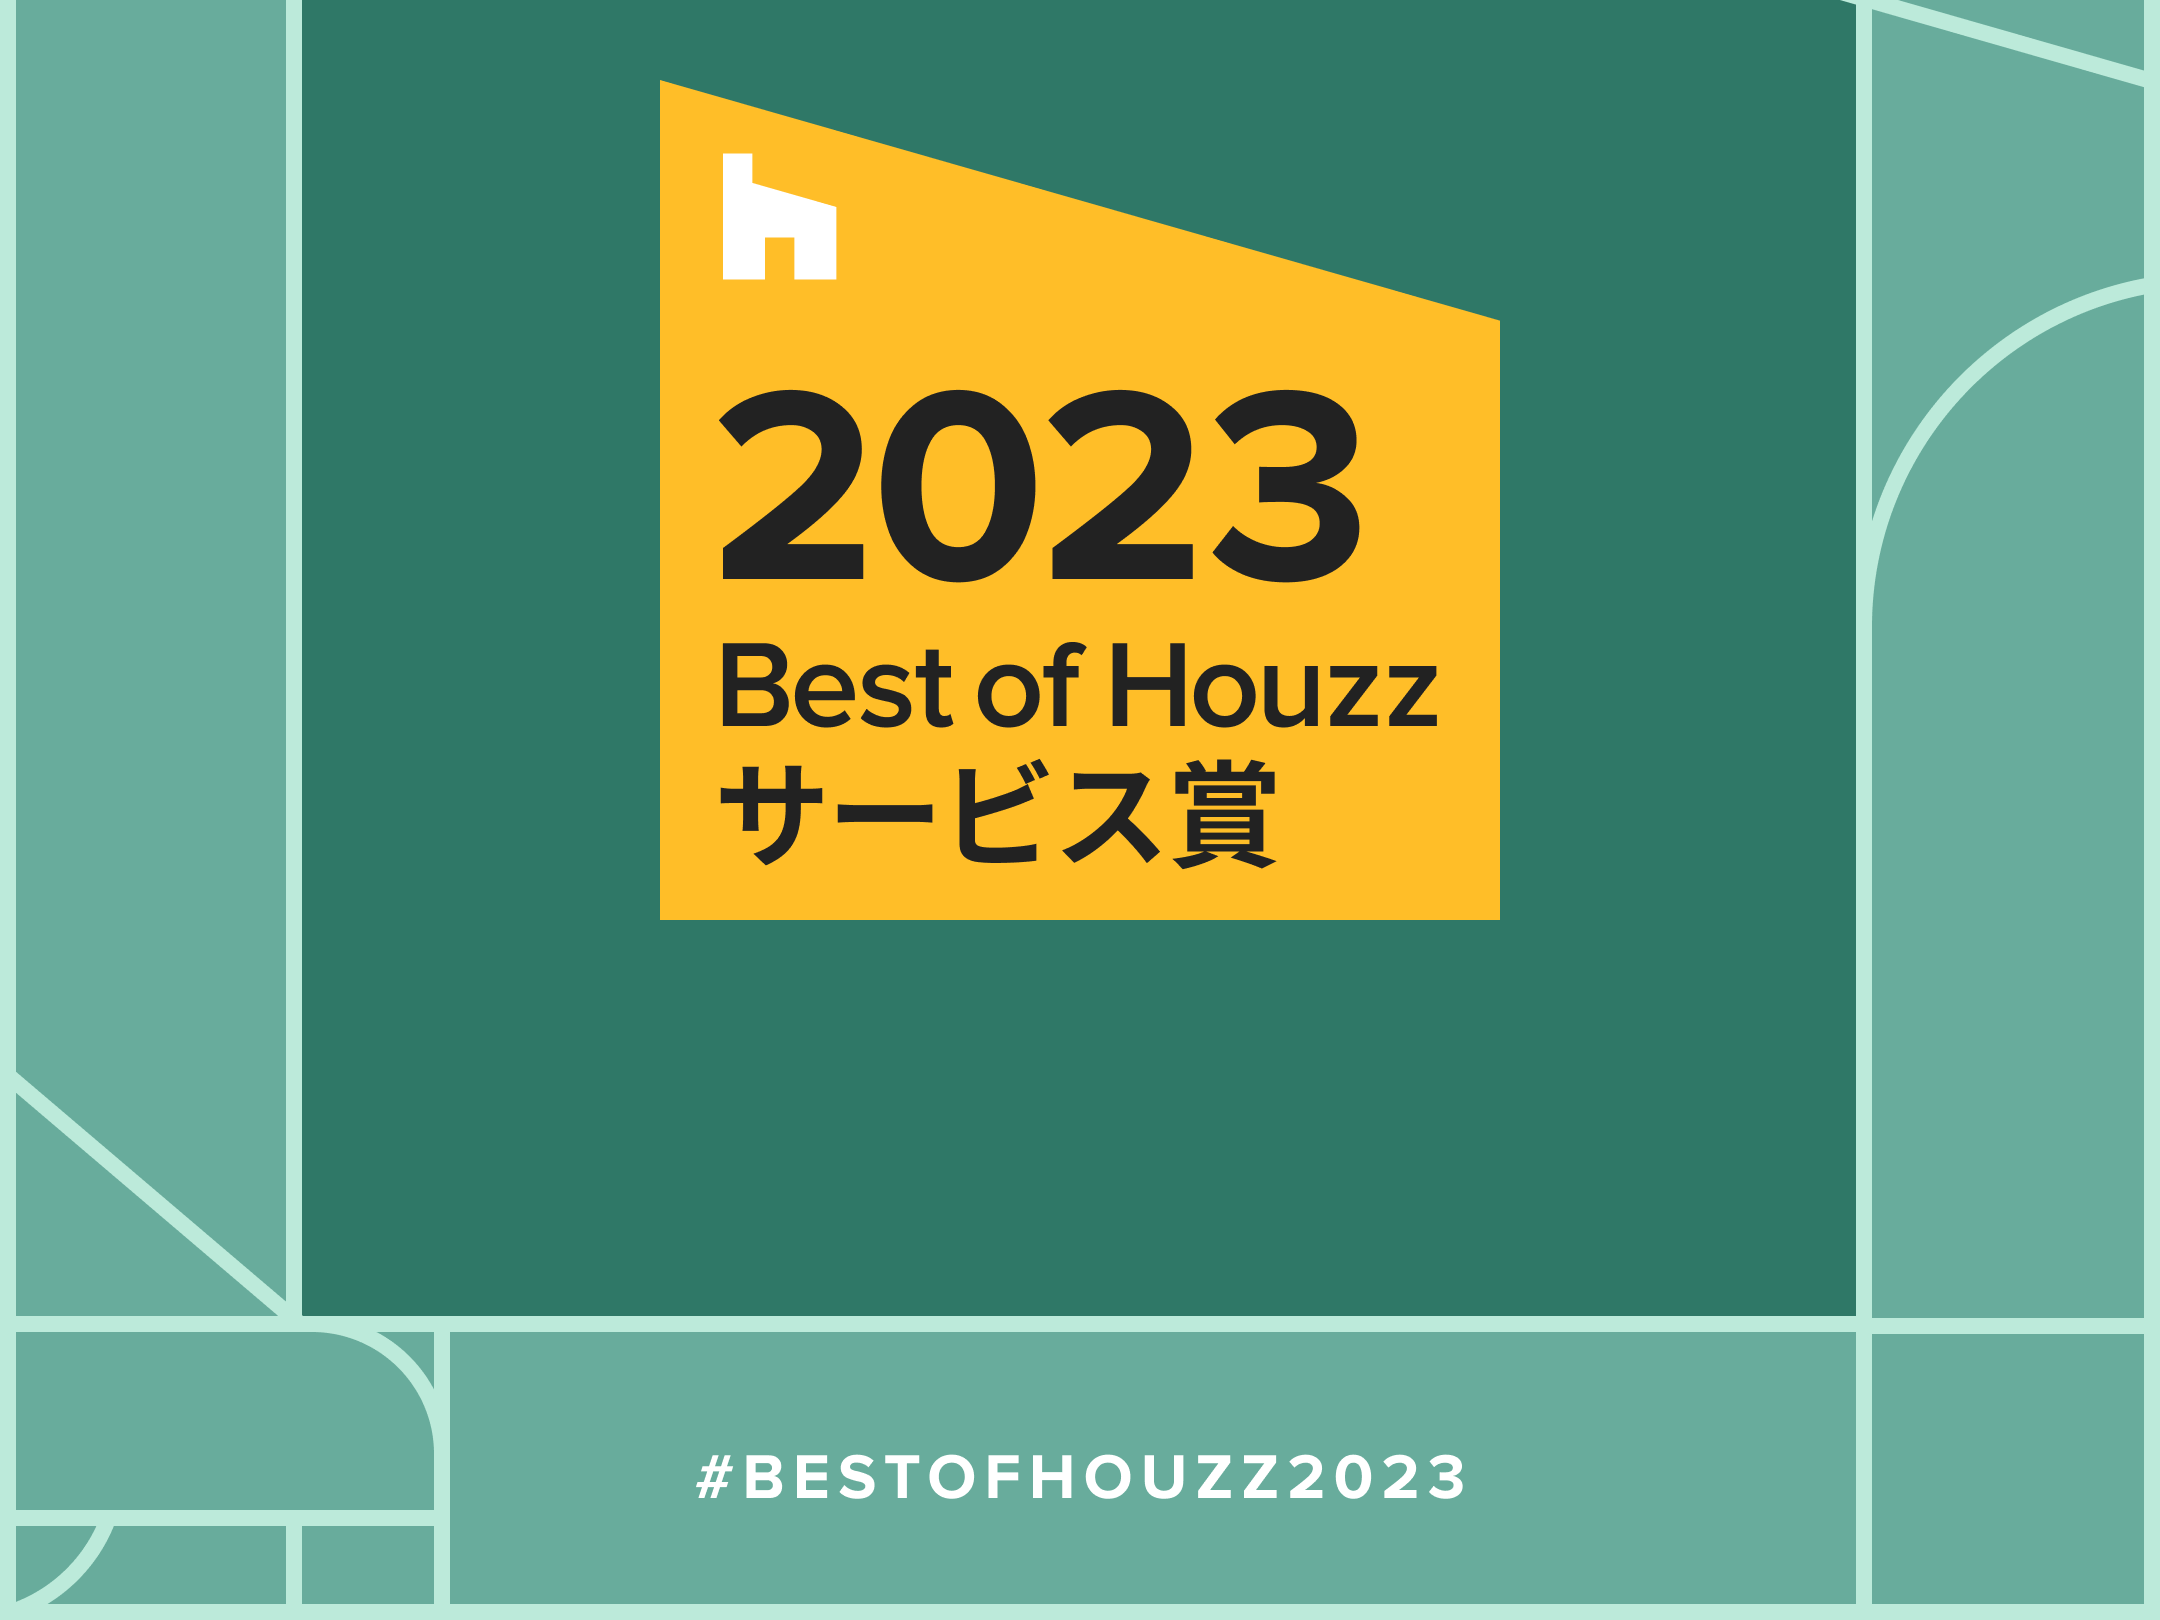 《足利建築》が 「Best of Houzz 2023」 を受賞しました